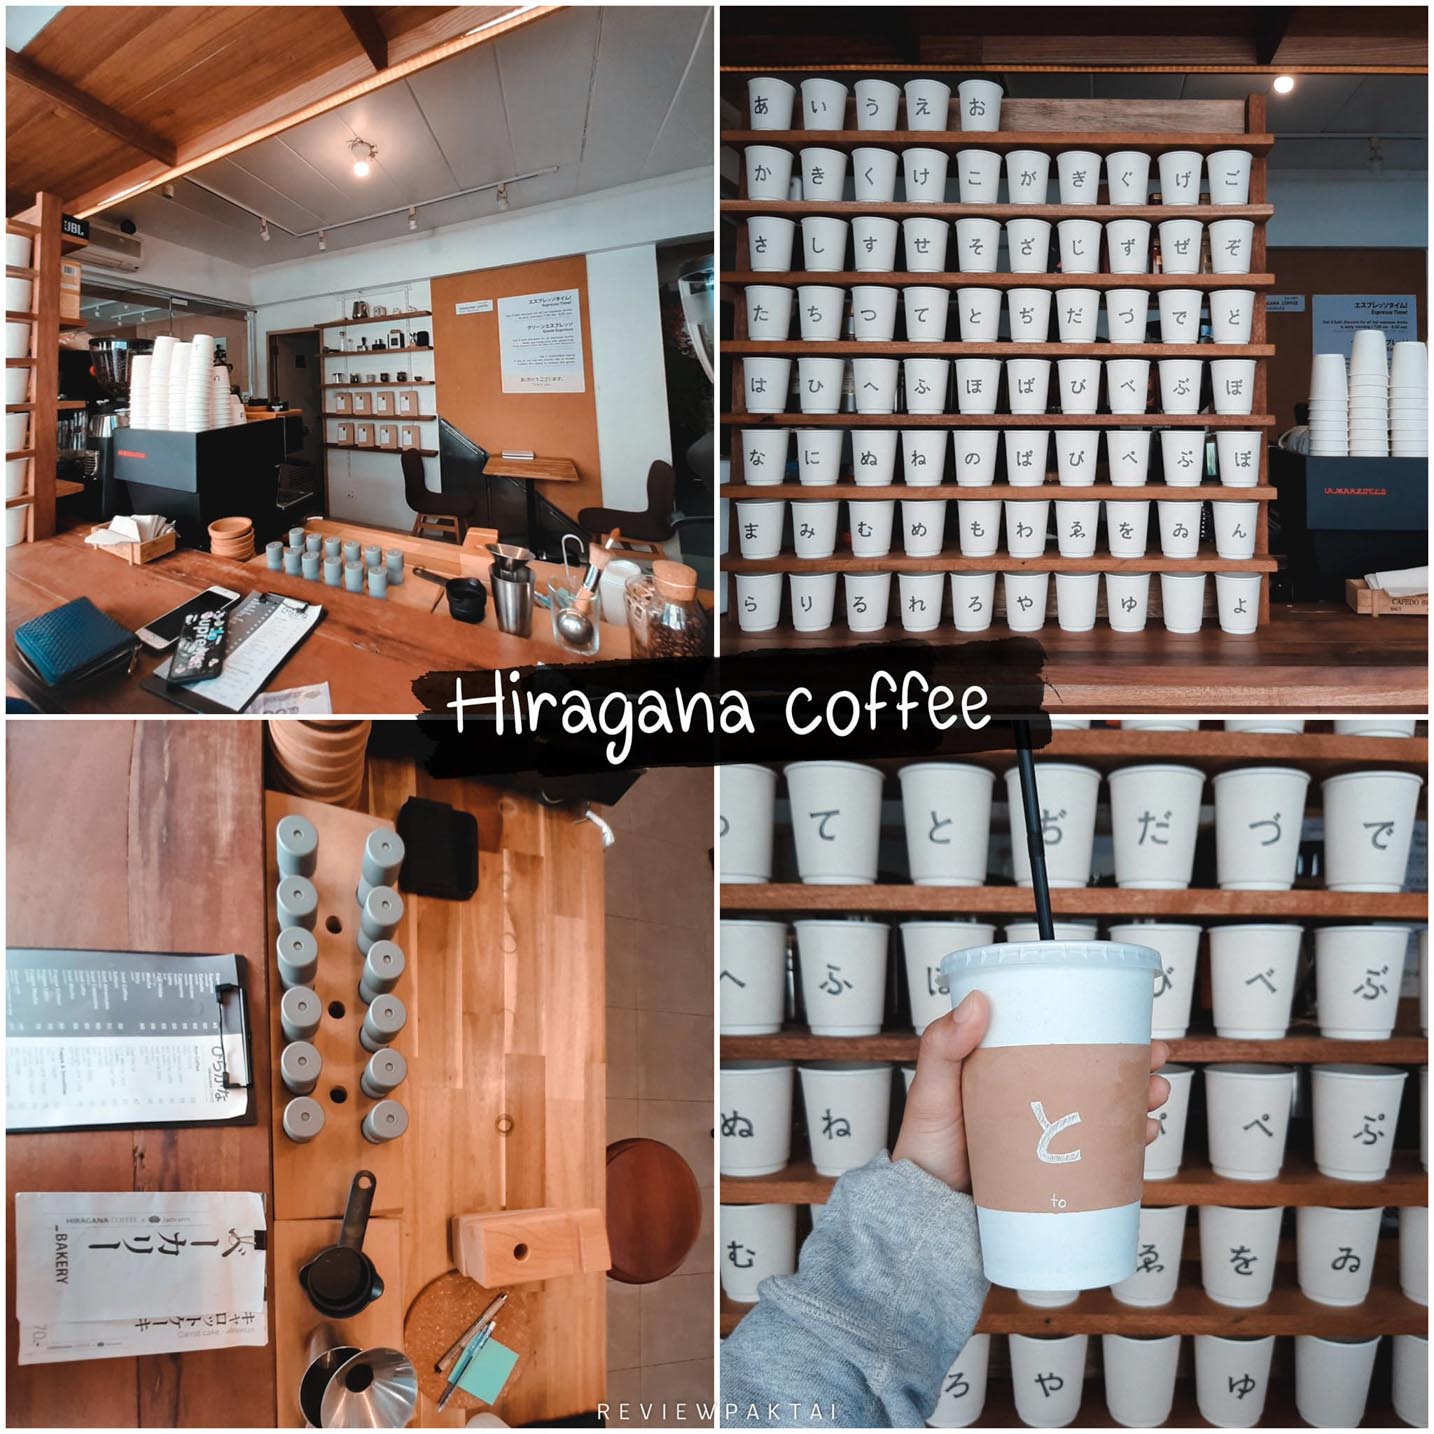 普吉岛平假名咖啡，日式可爱店，虽小但不普通，快来多角度拍美照打卡吧。